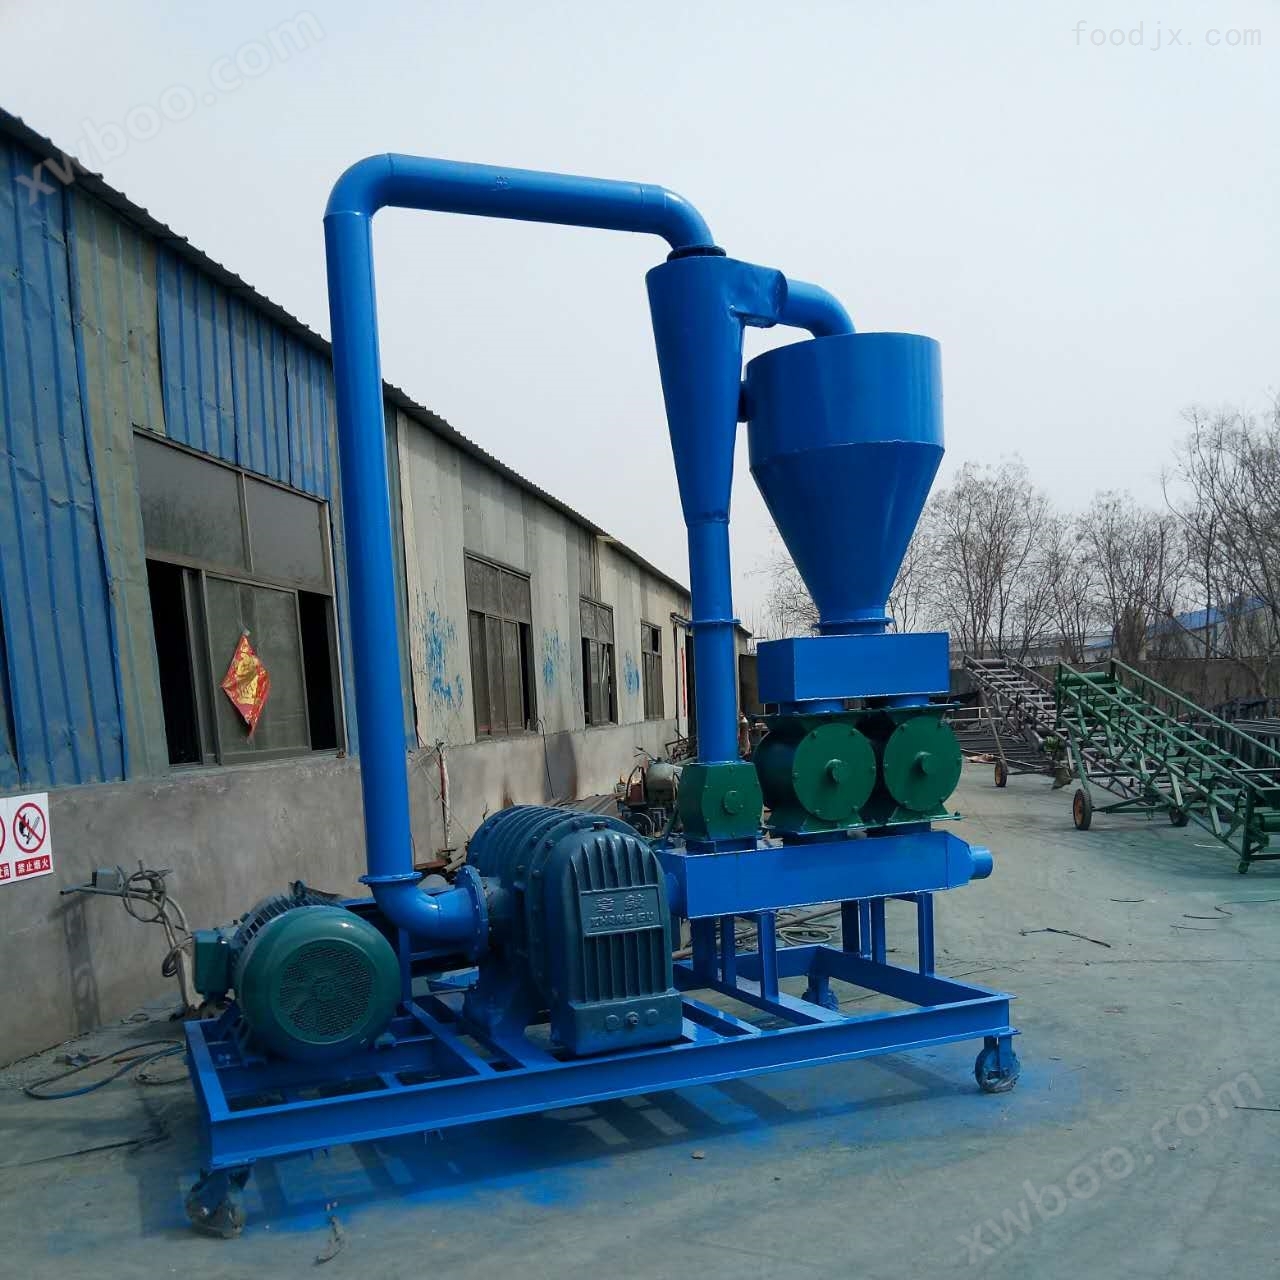 北京 粮食装卸用风力吸粮机 提高生产效